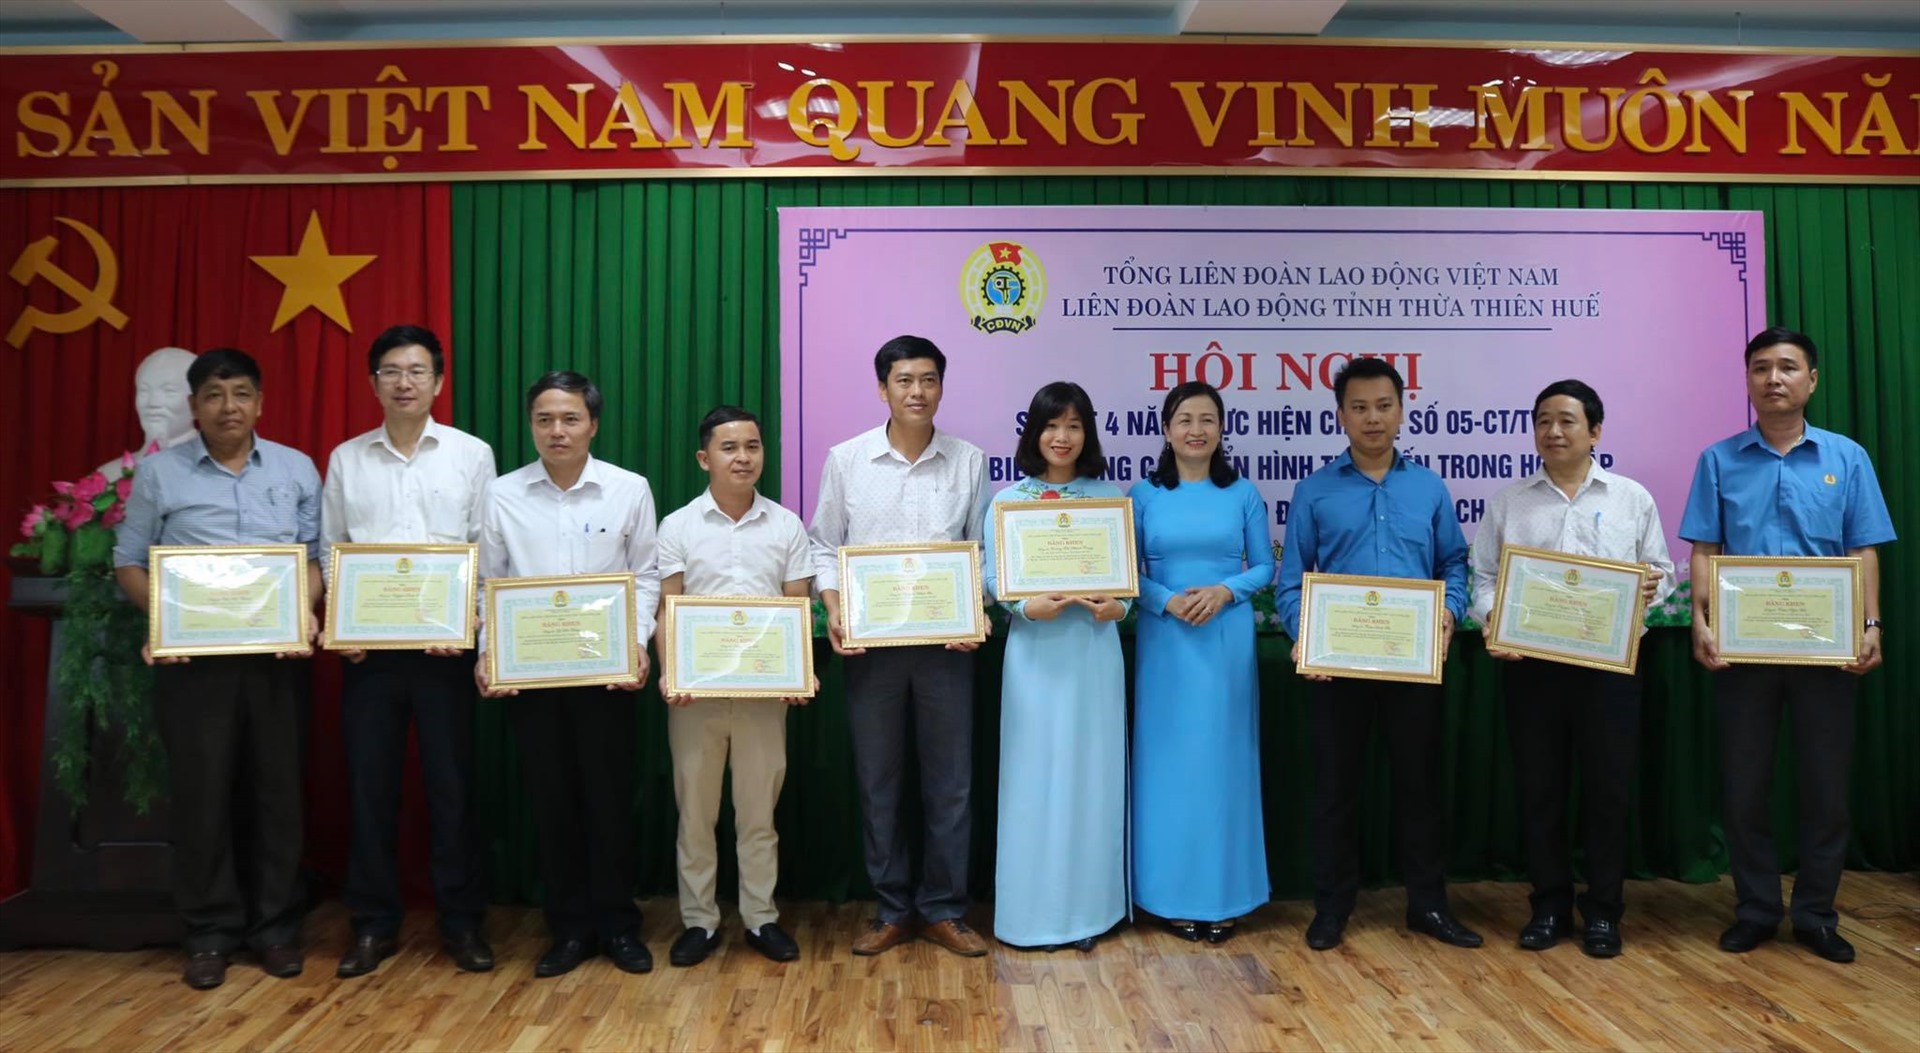 Dịp này, LĐLĐ tỉnh Thừa Thiên Huế trao bằng khen cho 19 tập thể và 41 cá nhân là các điển hình tiên tiến trong học tập và làm theo tư tưởng, đạo đức, phong cách Hồ Chí Minh.